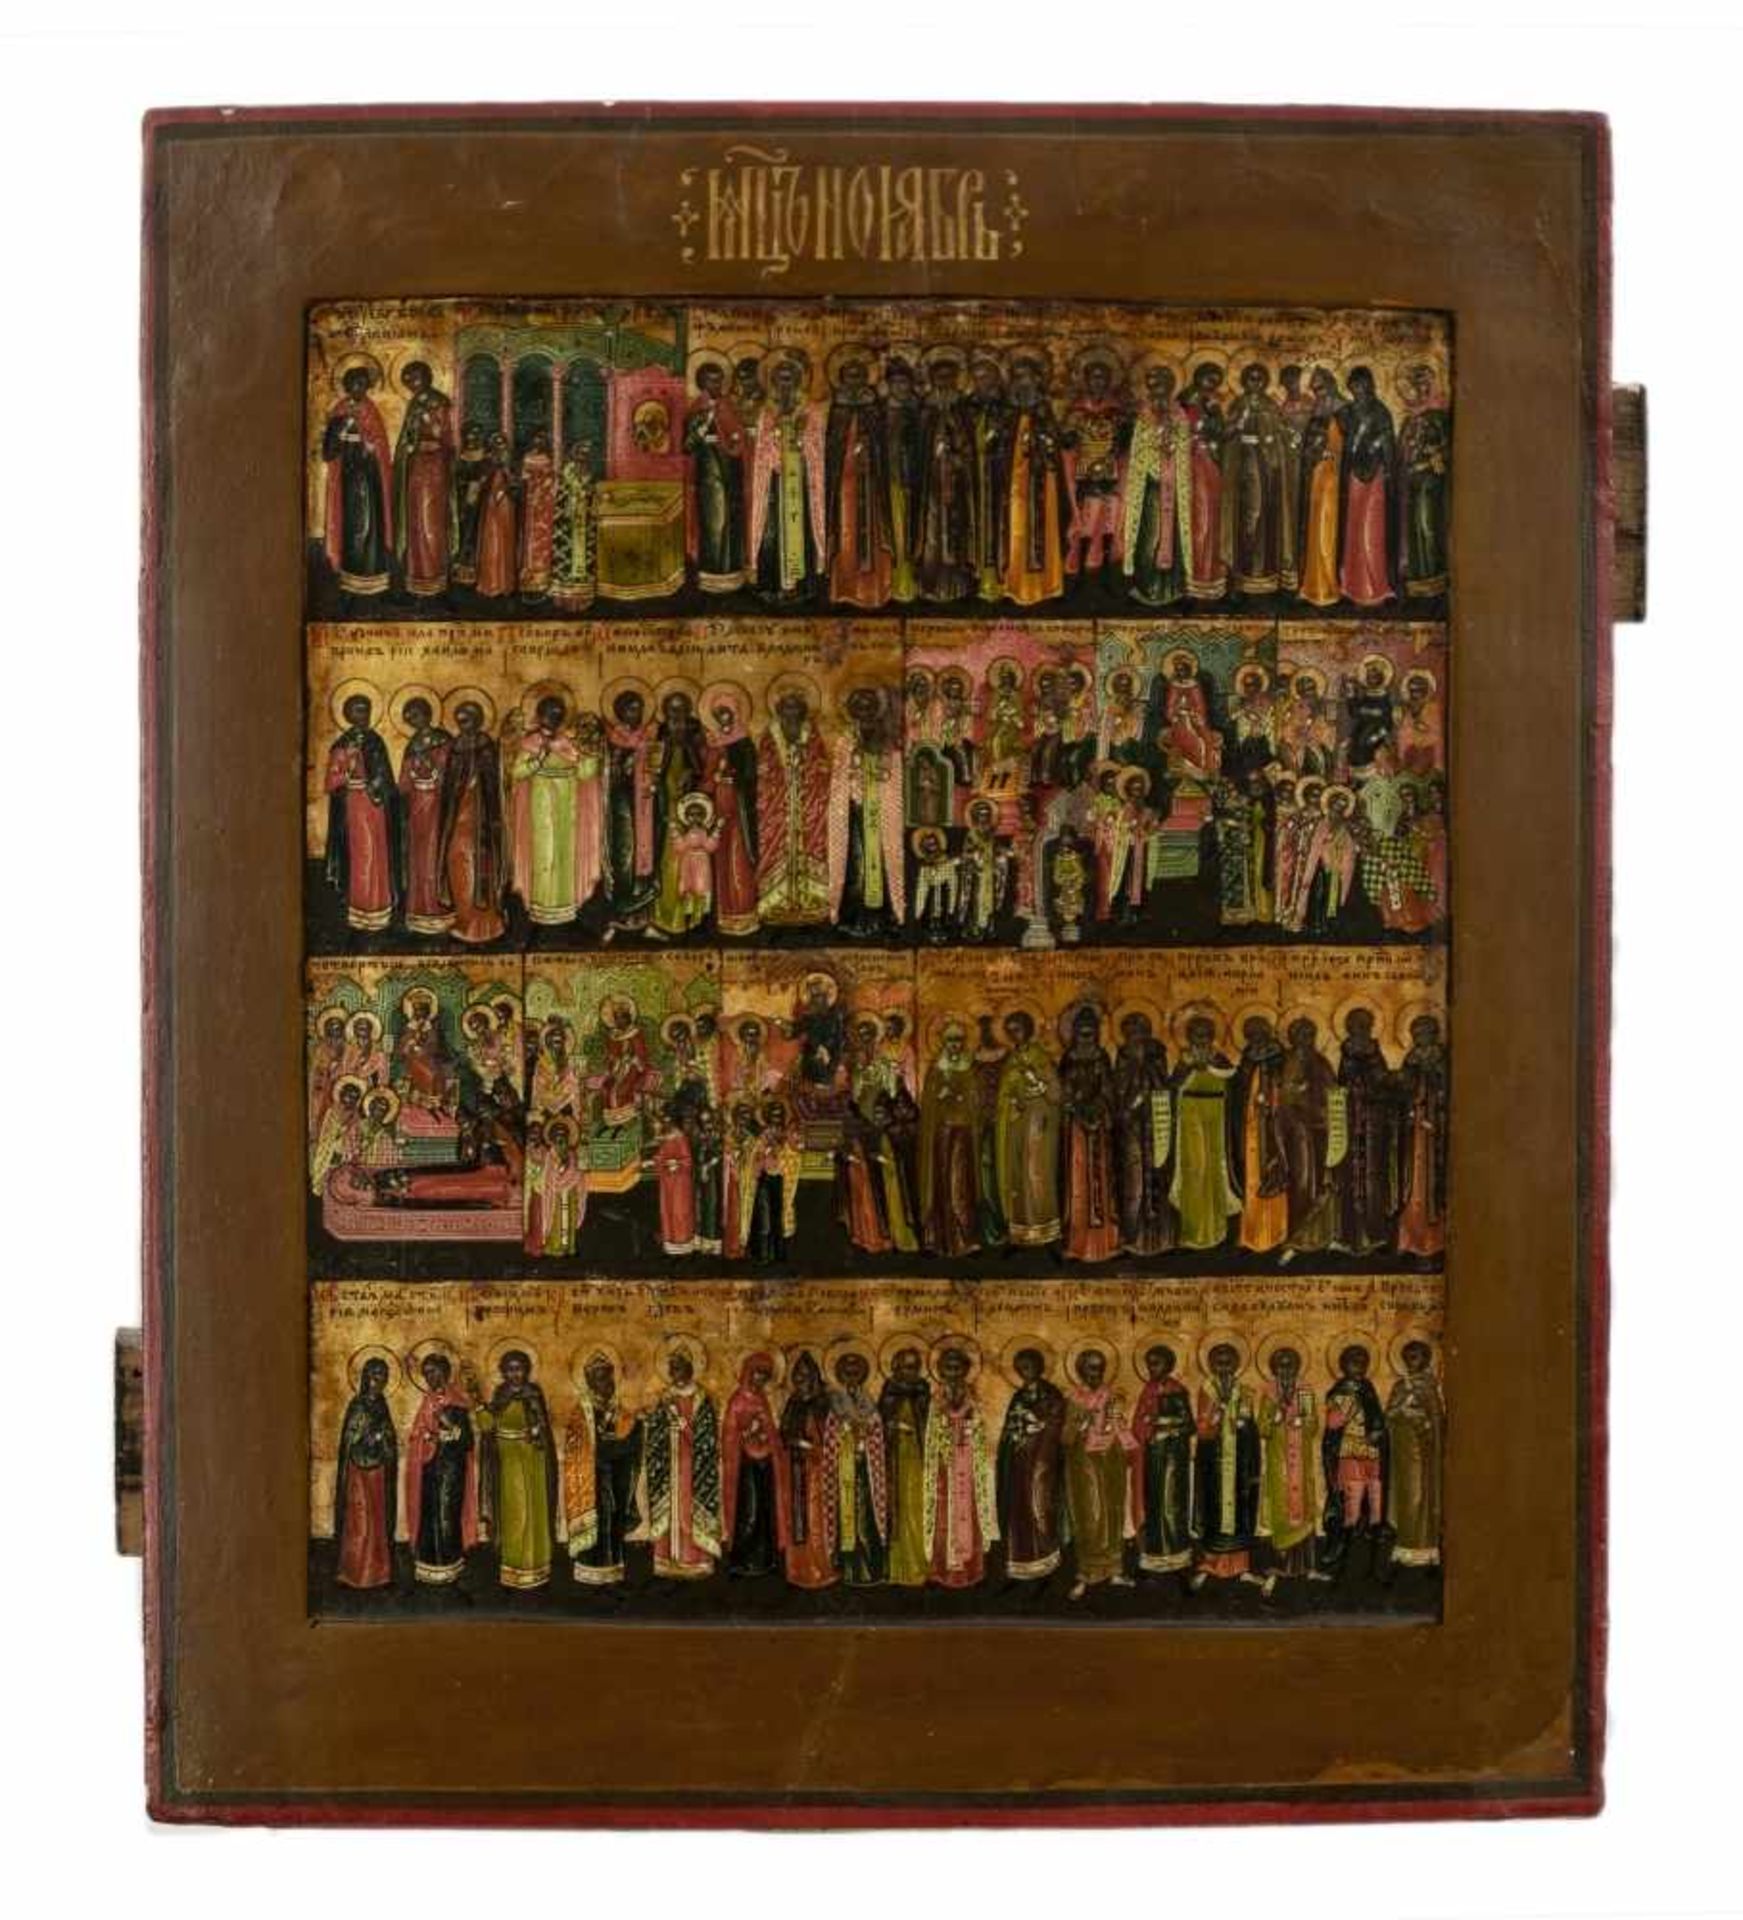 Monat JuliRussische Ikone, Tempera / Holz, 19. Jh.31 x 26 cmDer Rand ist restauriert, die